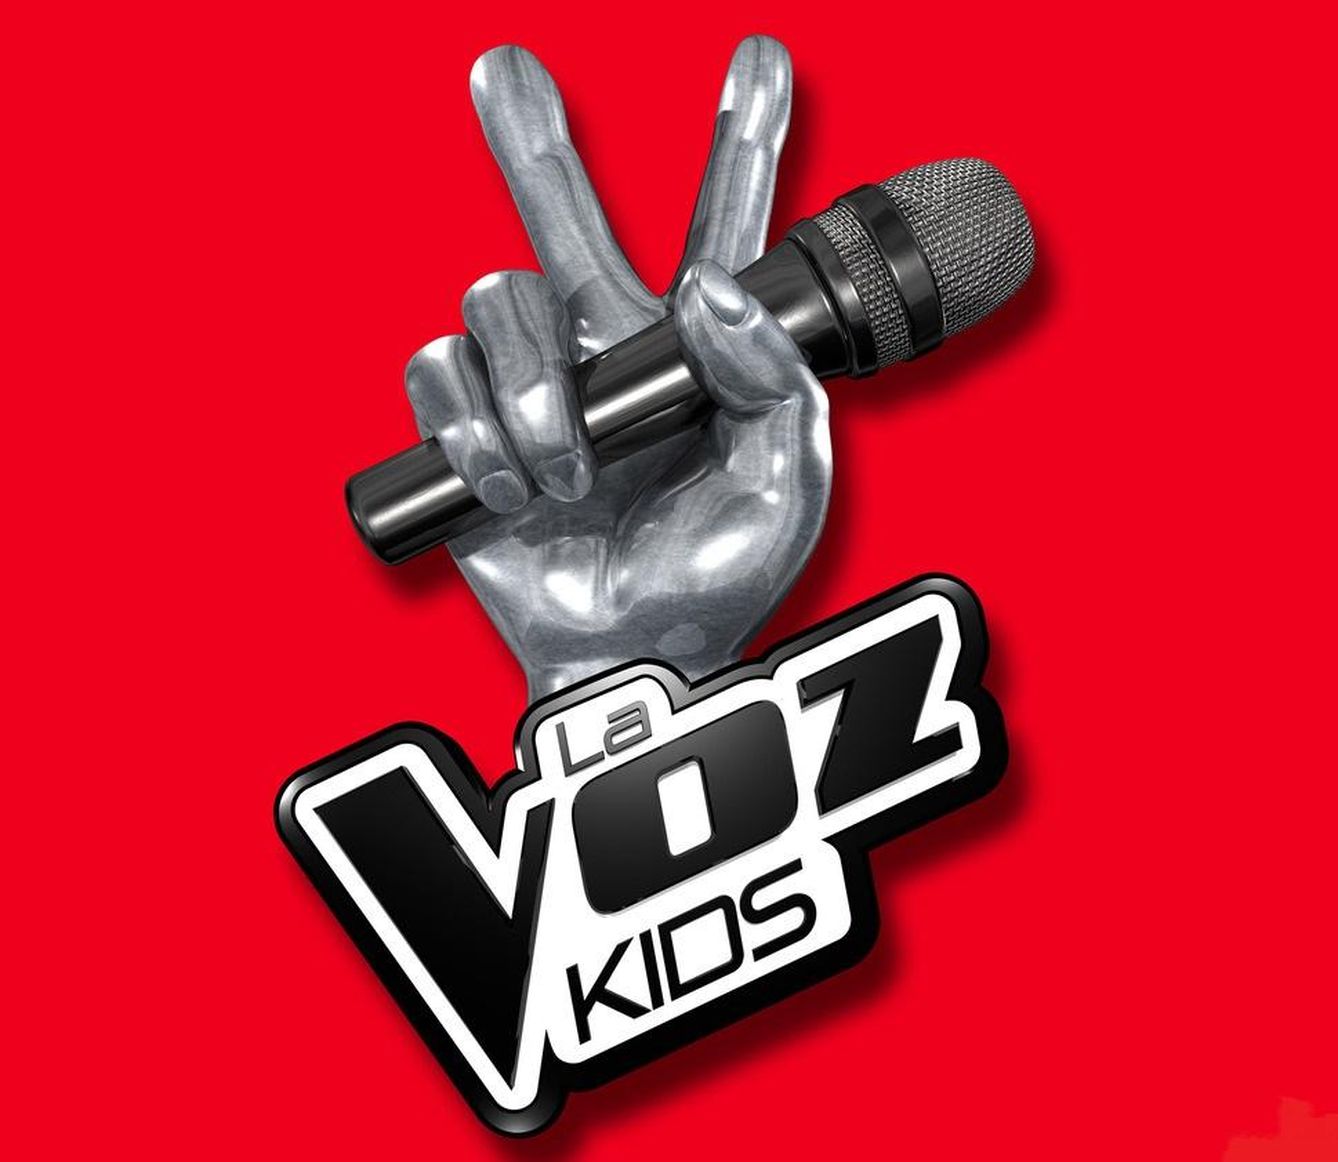 La Voz Kids